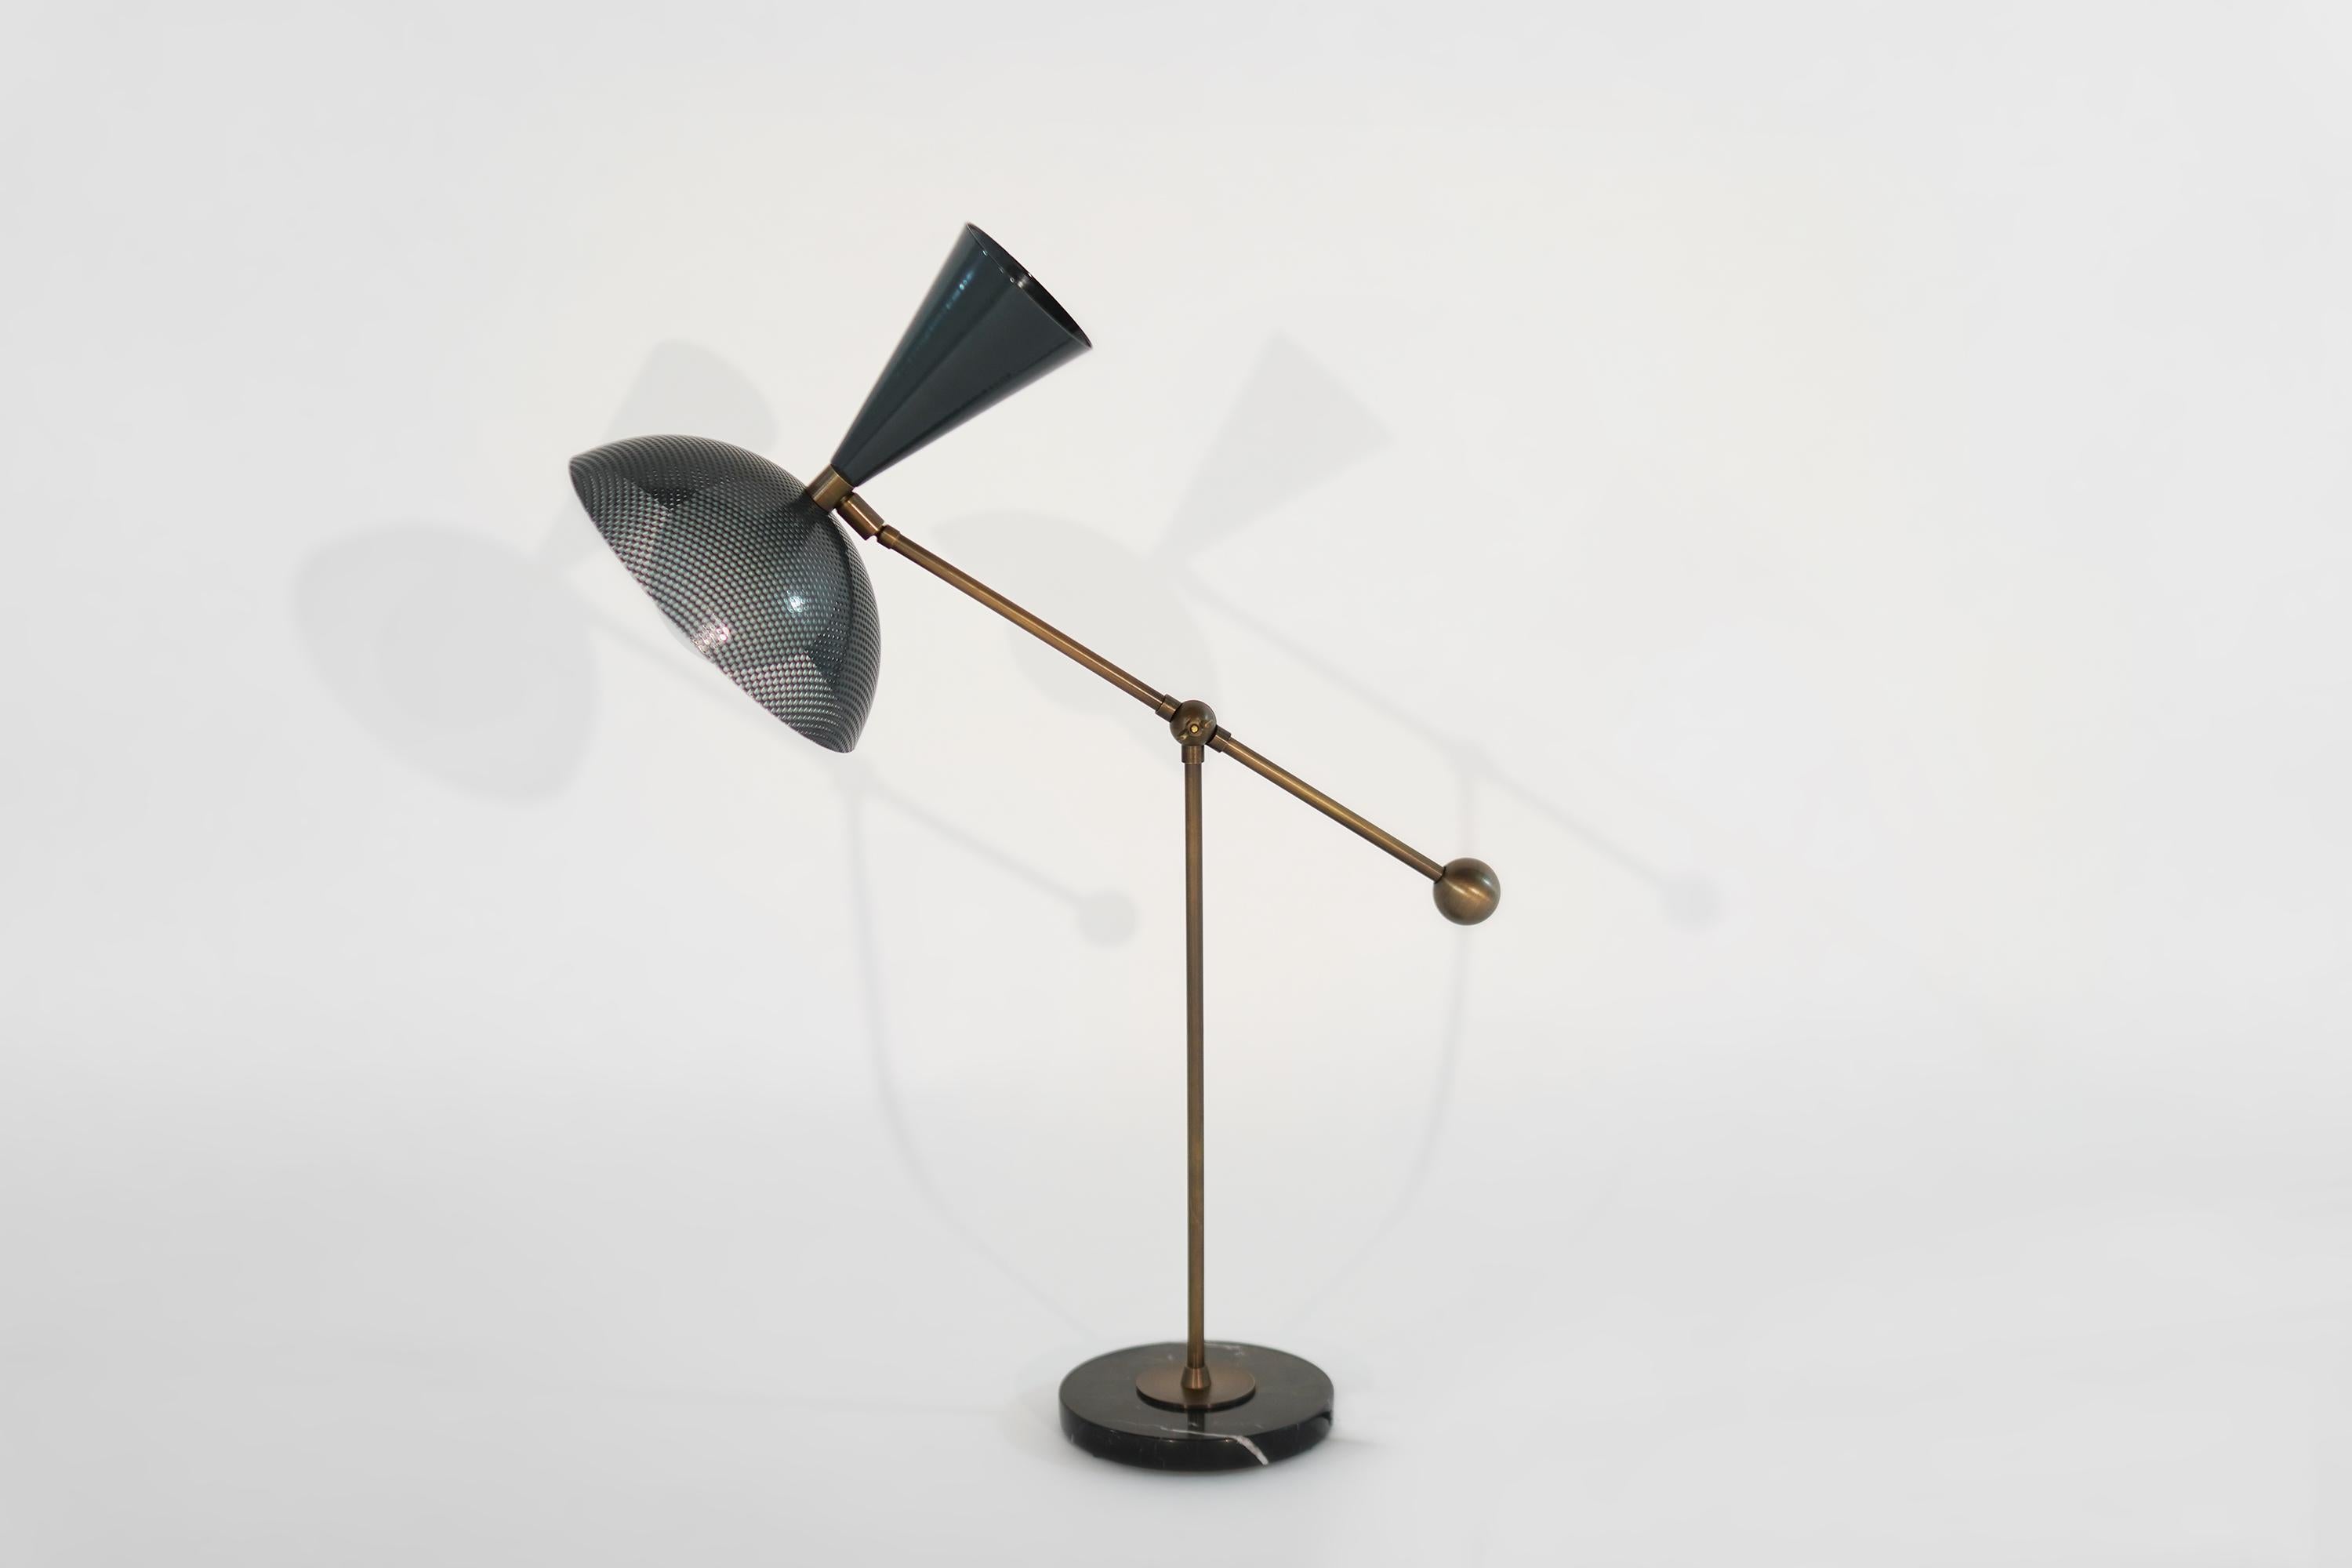 La lampe de table ou de bureau Molto est une nouvelle interprétation du modernisme italien, avec un abat-jour en métal filé, un contrepoids en laiton et une lourde base en marbre noir. Cette lampe s'articule en deux endroits : l'articulation du bras